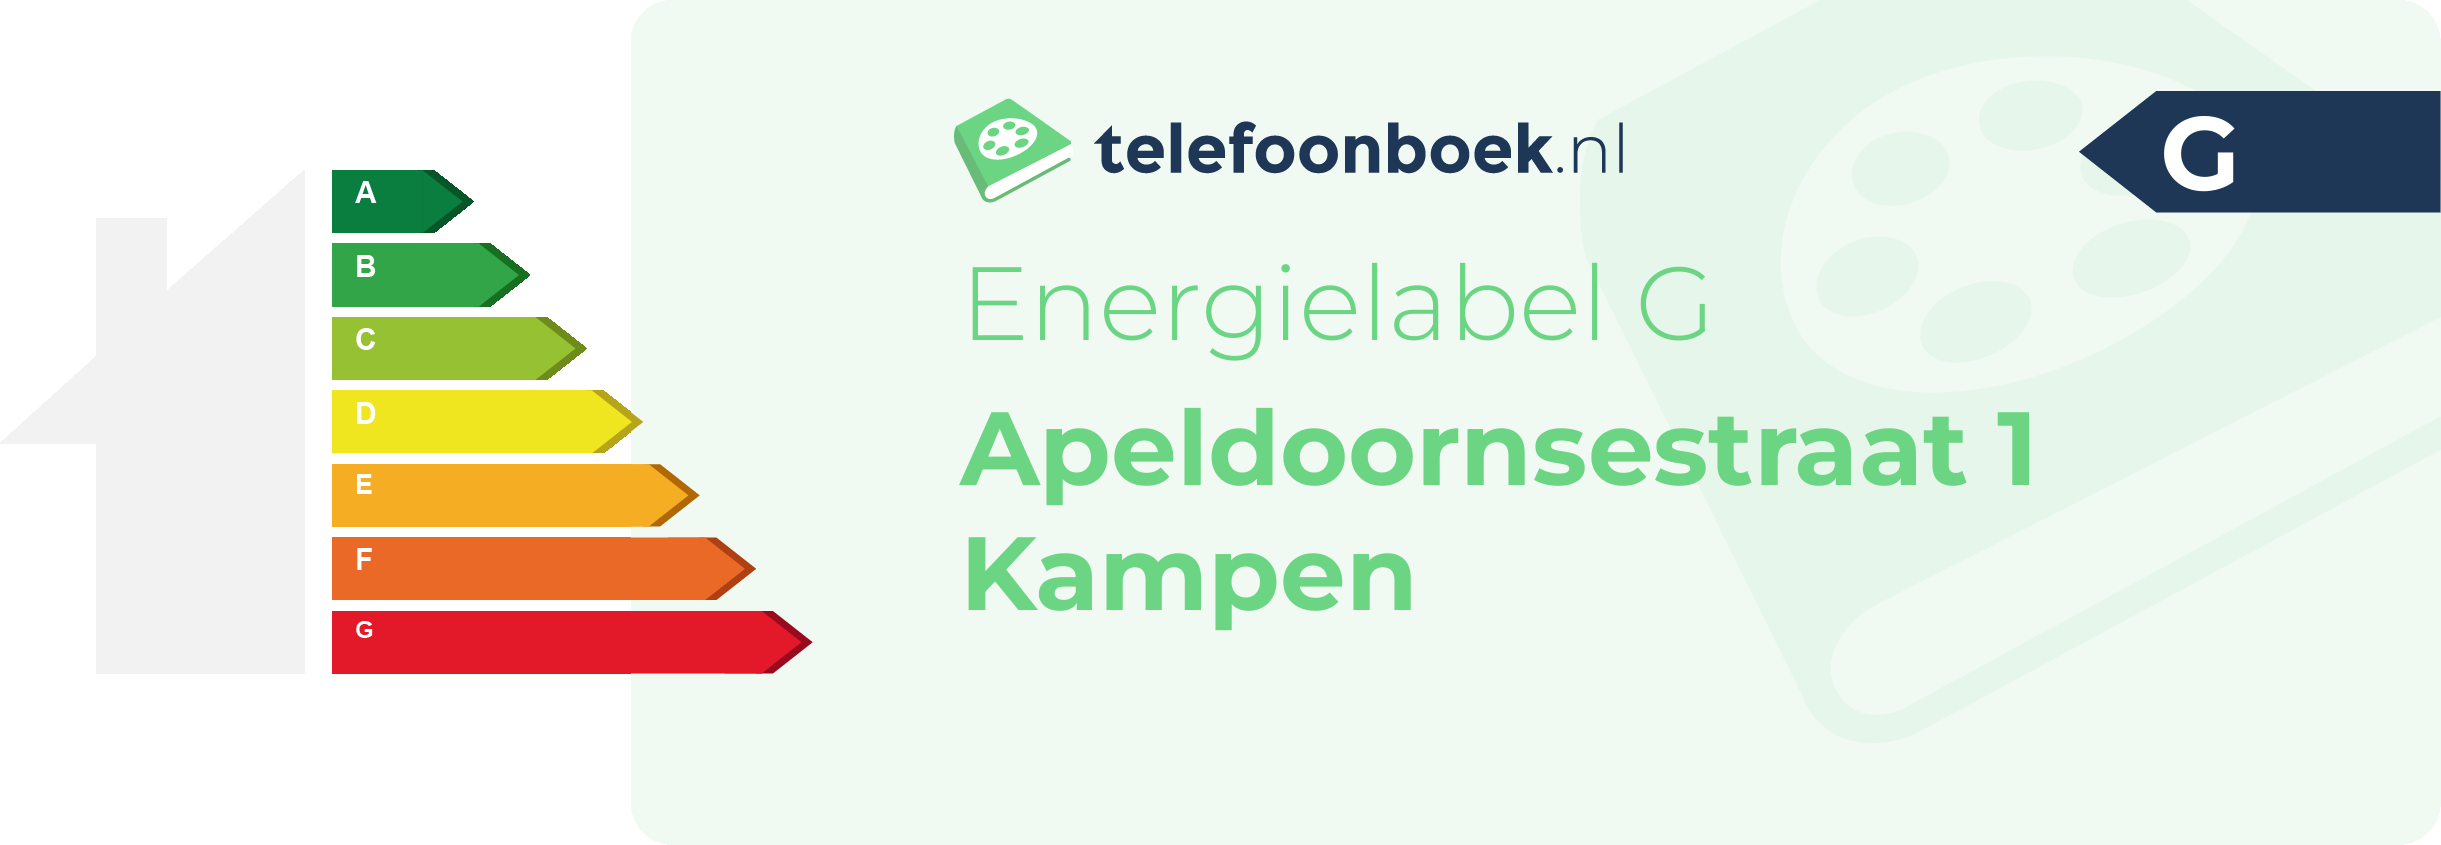 Energielabel Apeldoornsestraat 1 Kampen